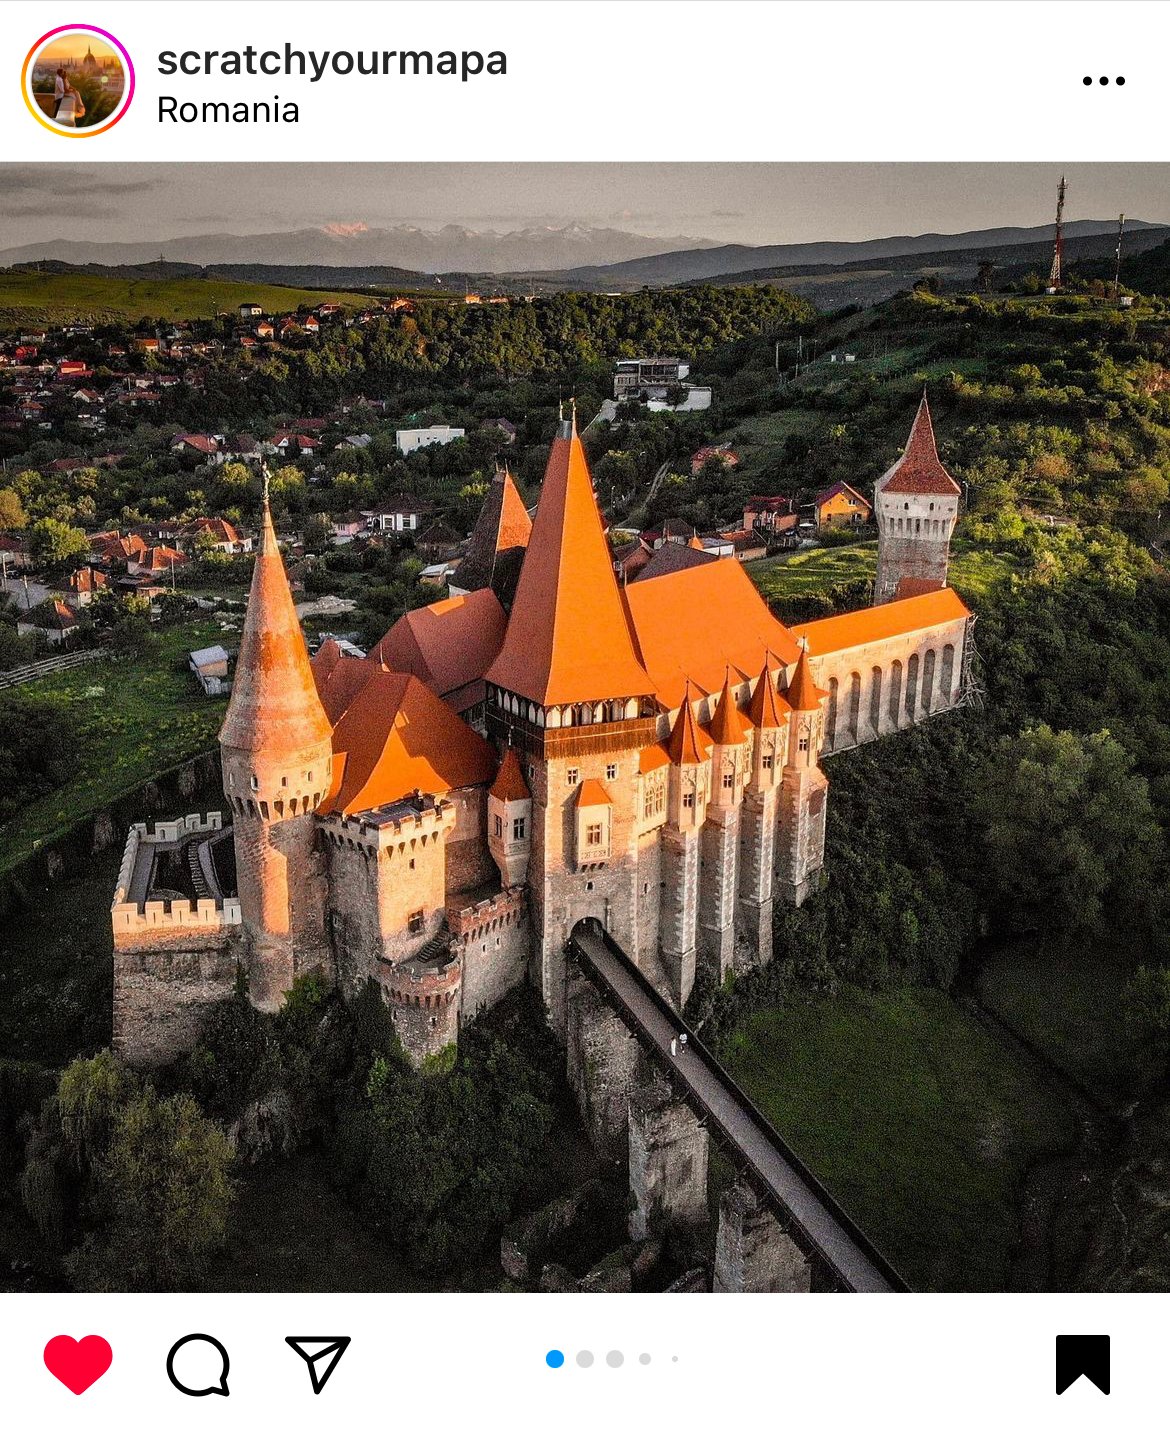 Corvins Castle, Transylvania in Romania